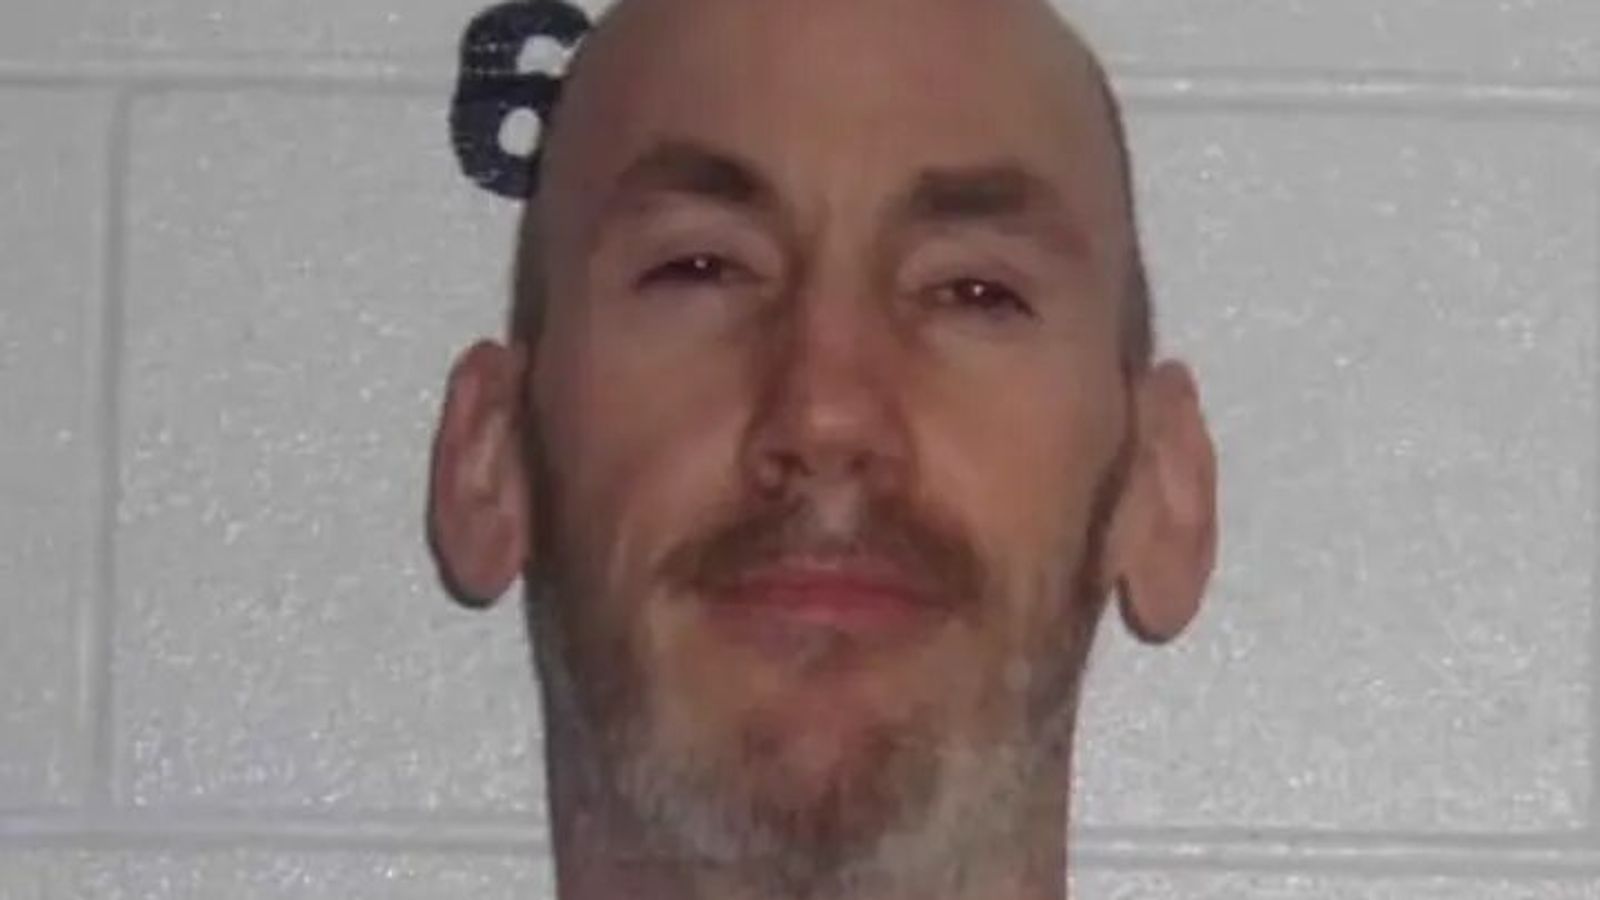 Prisoner on the run after Shawshank Redemption-style jailbreak in Colorado